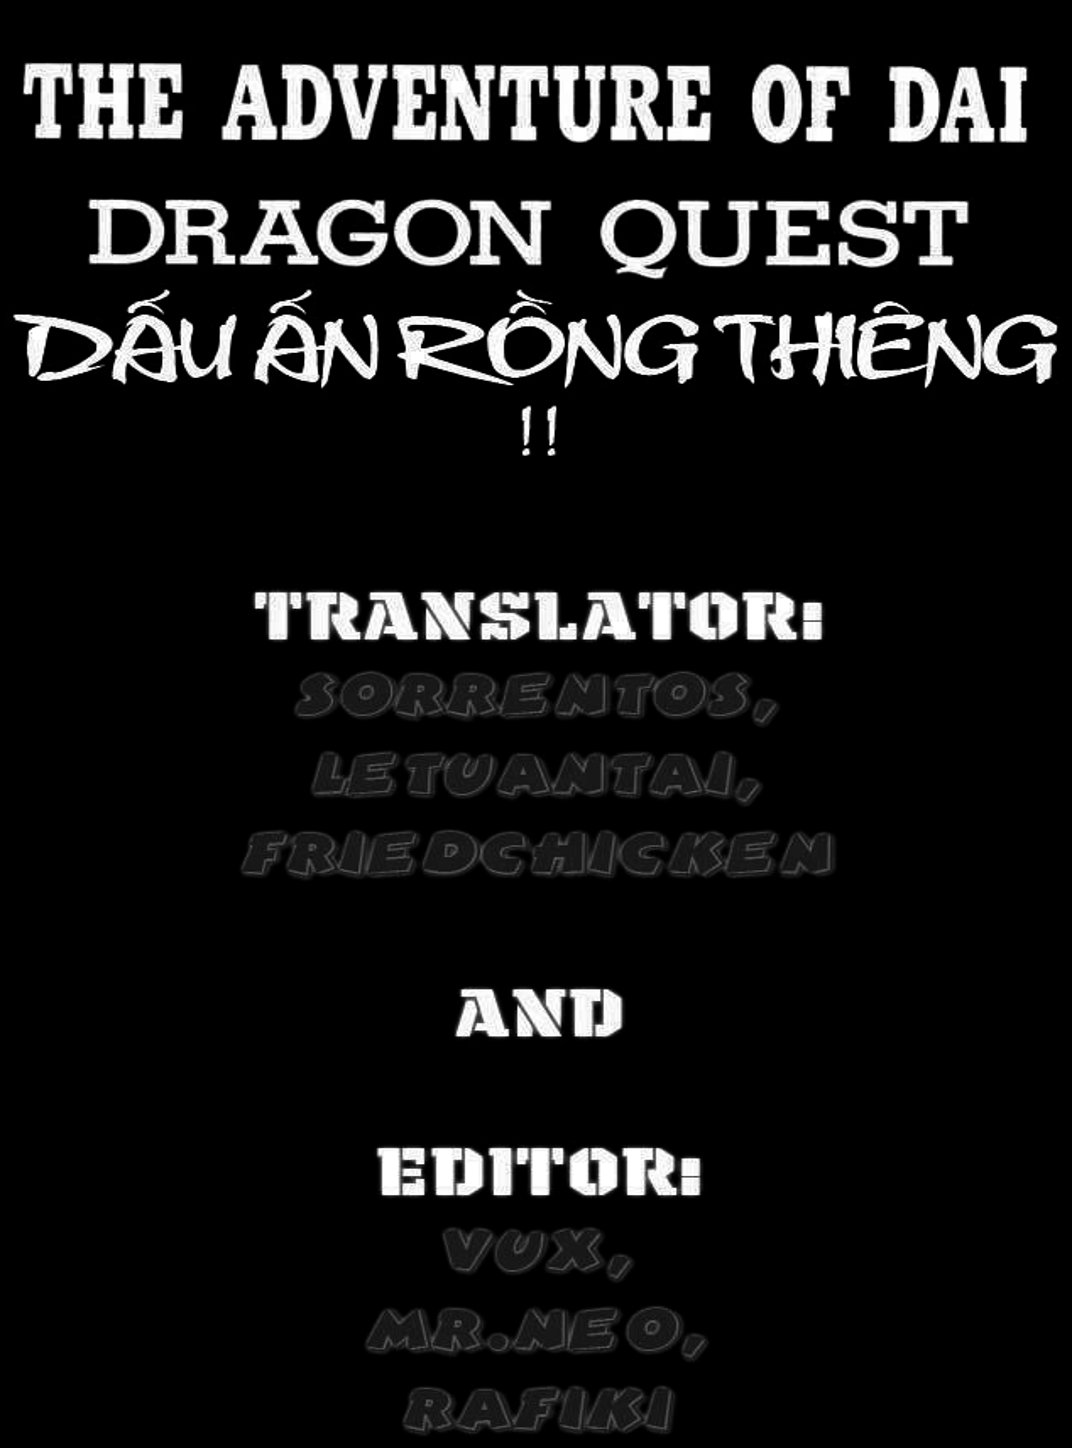 Truyện Tranh Dấu Ấn Rồng Thiêng - Dragon Quest trang 6830